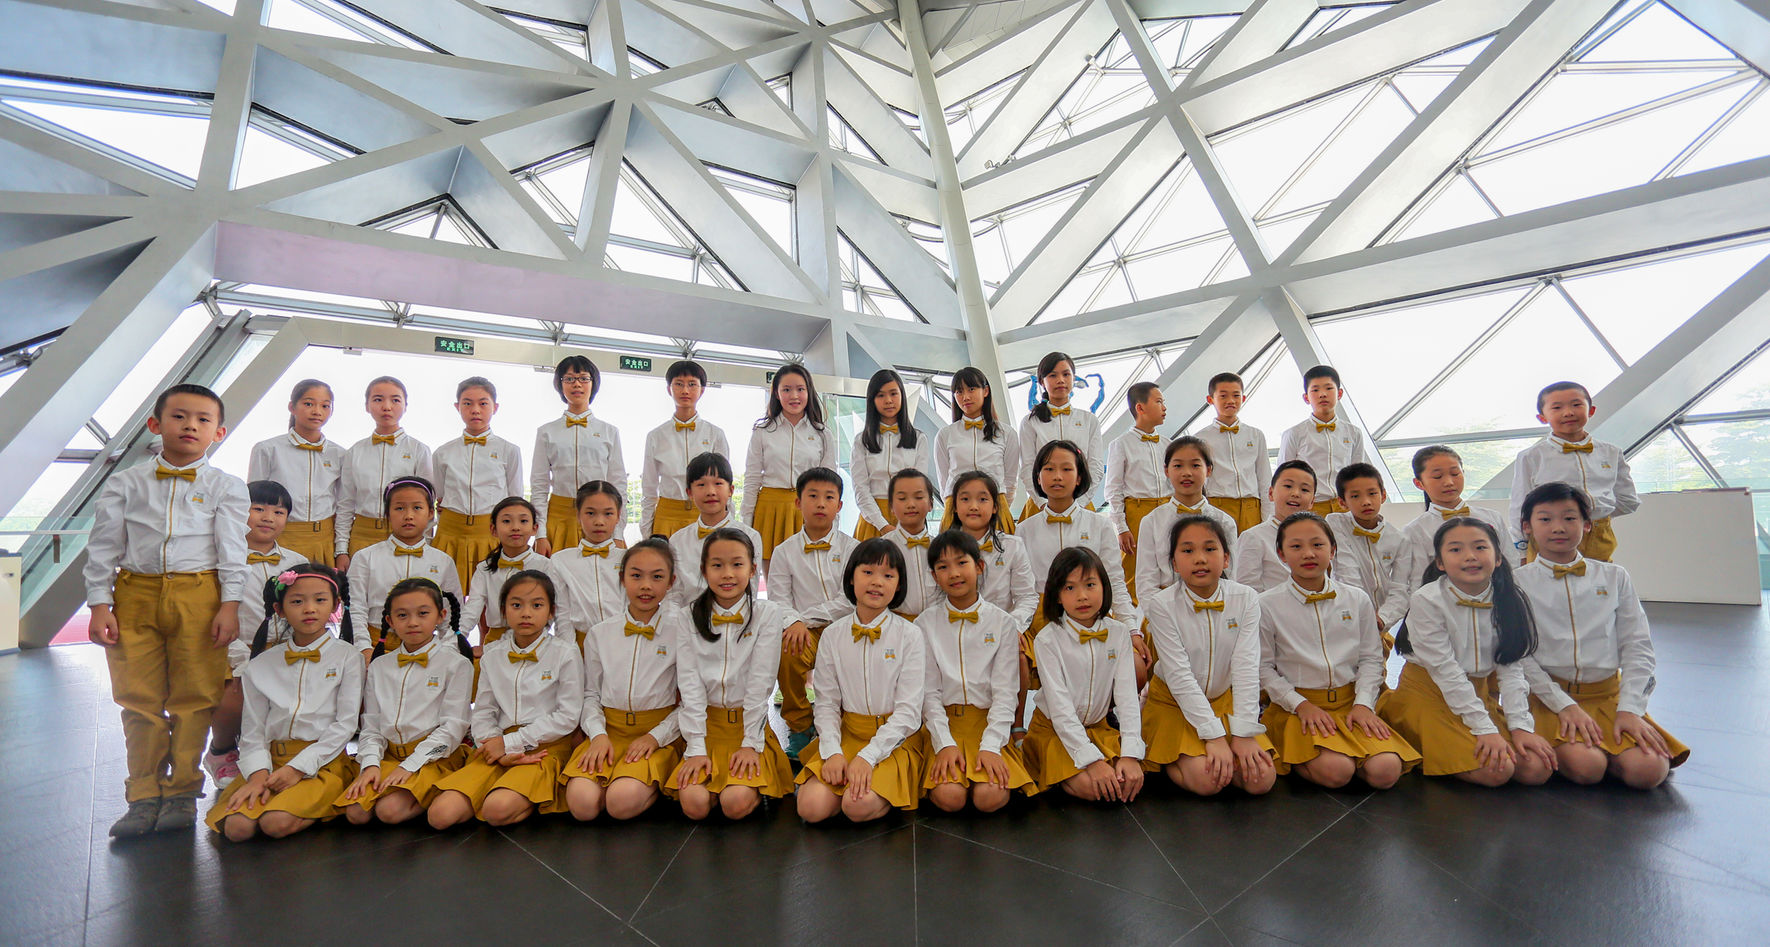 Guangzhou Opera House Children's Chorus